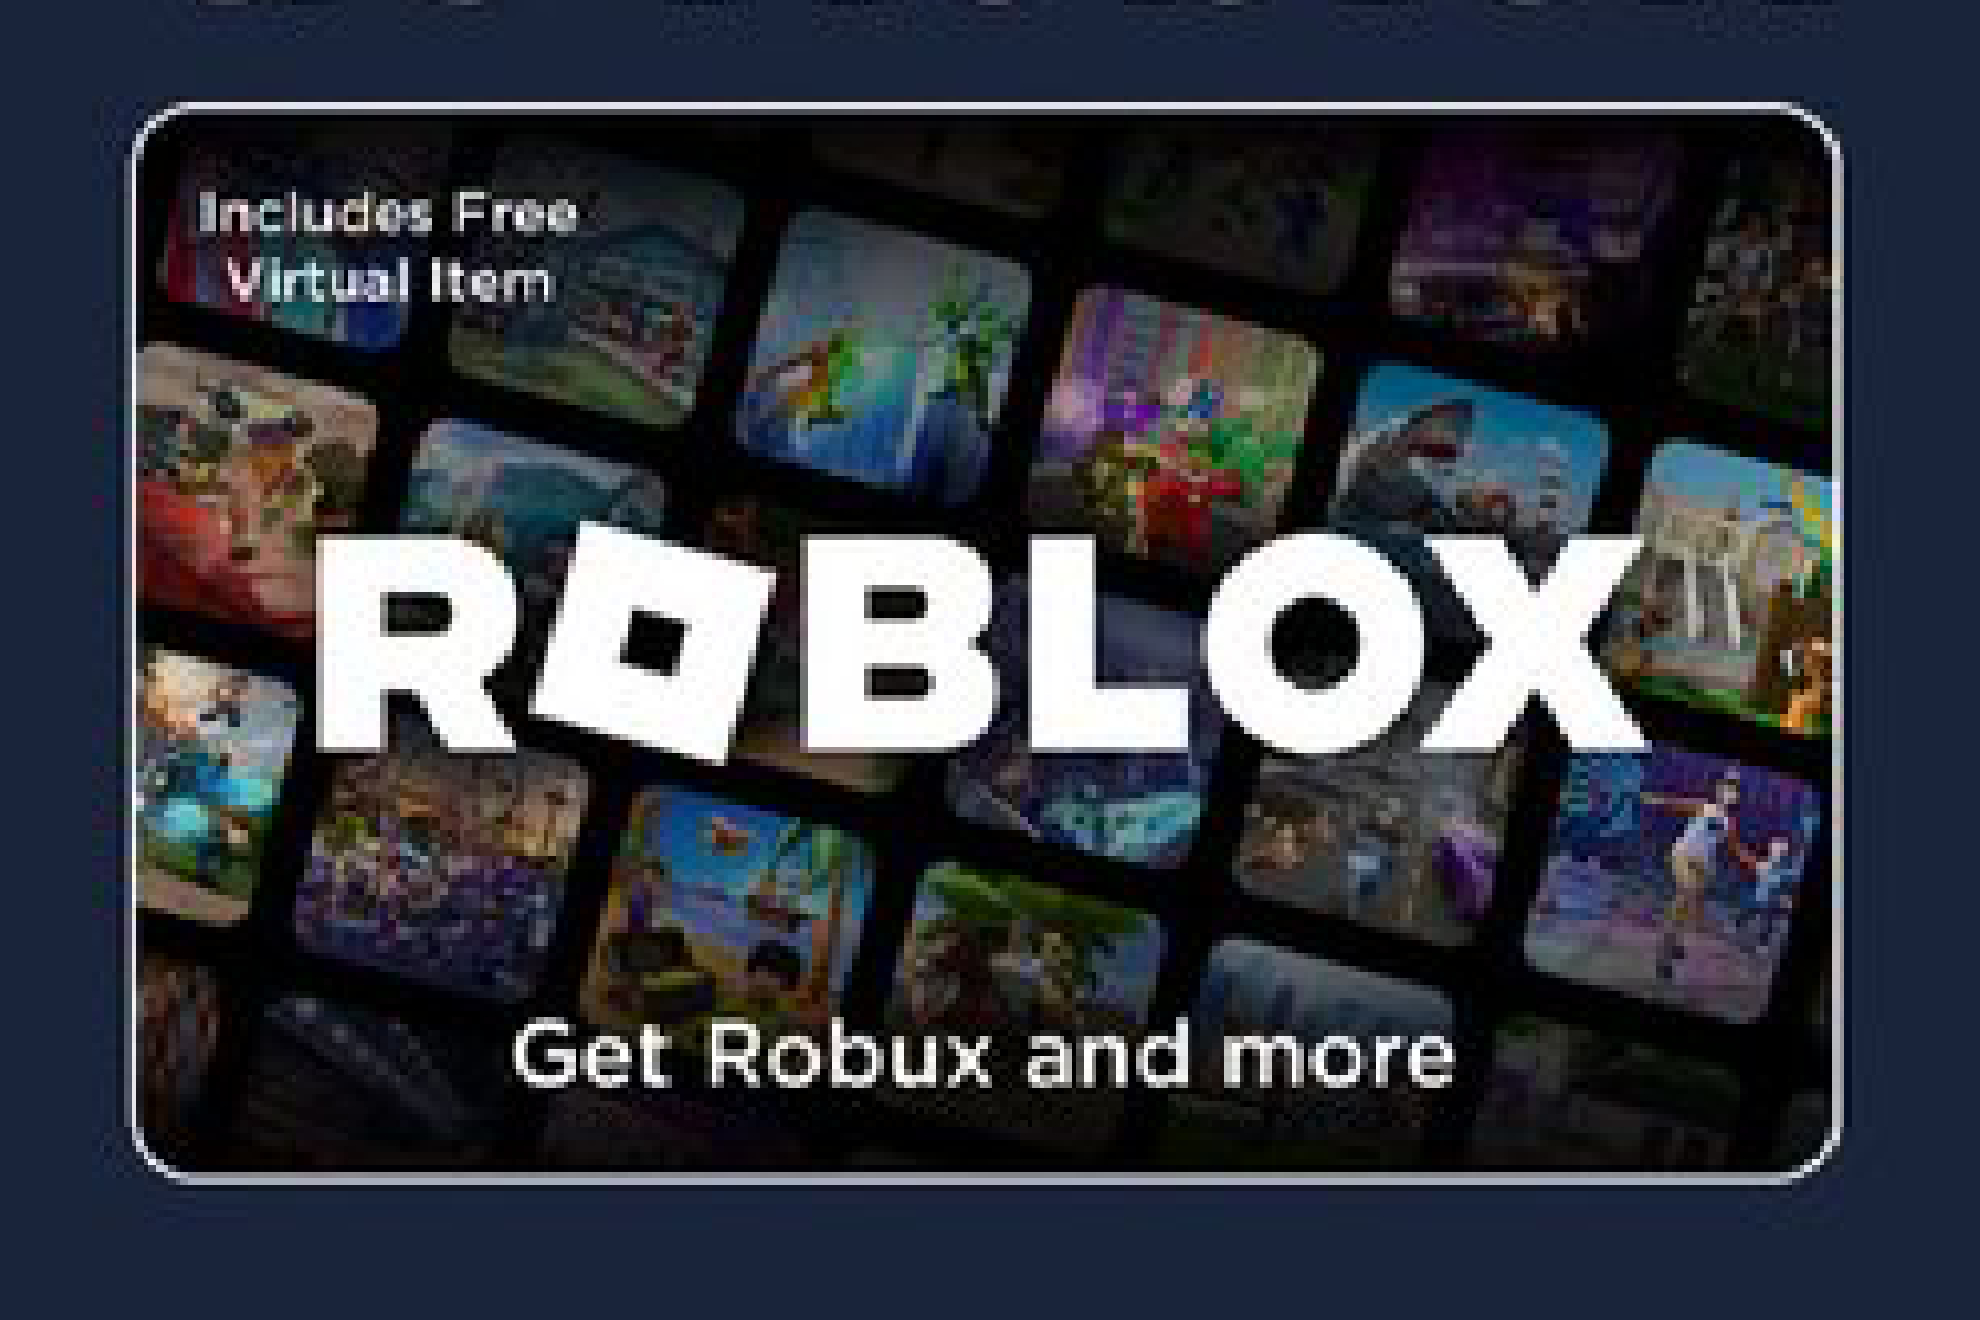 ROBLOX agregara ESTA NUEVA FUNCION para INICIAR SESION, ahora será